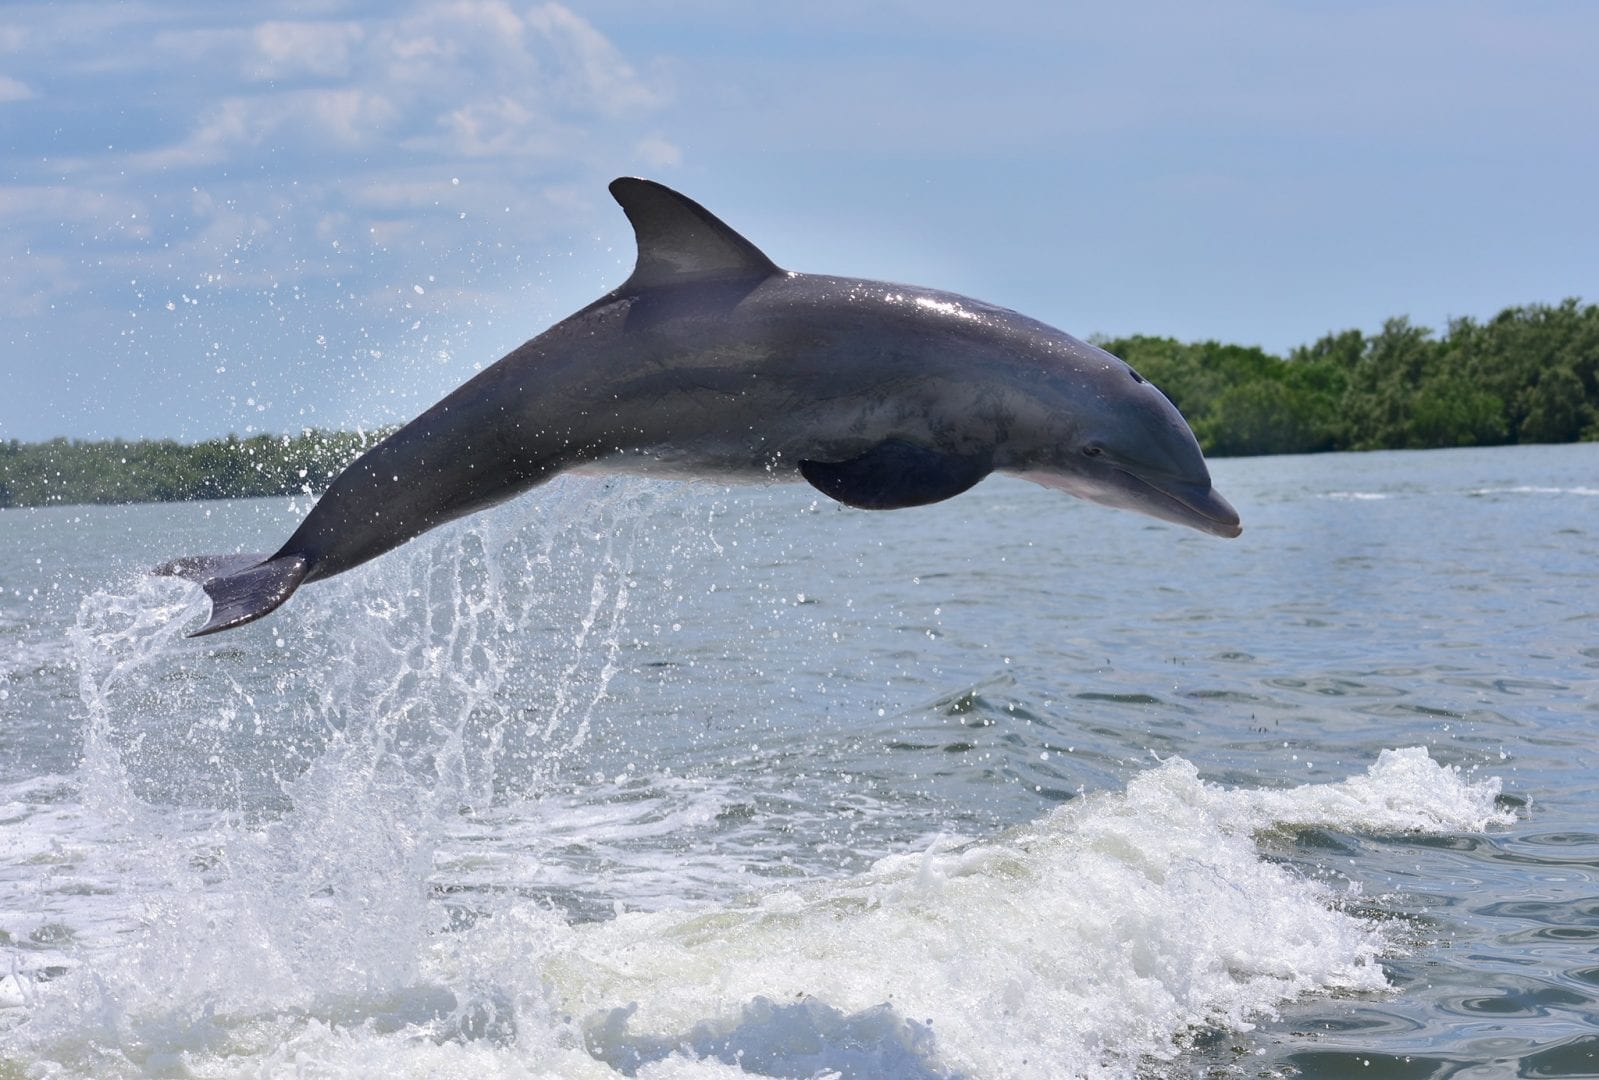  Delfines: cómo viven, qué comen y sus principales hábitos